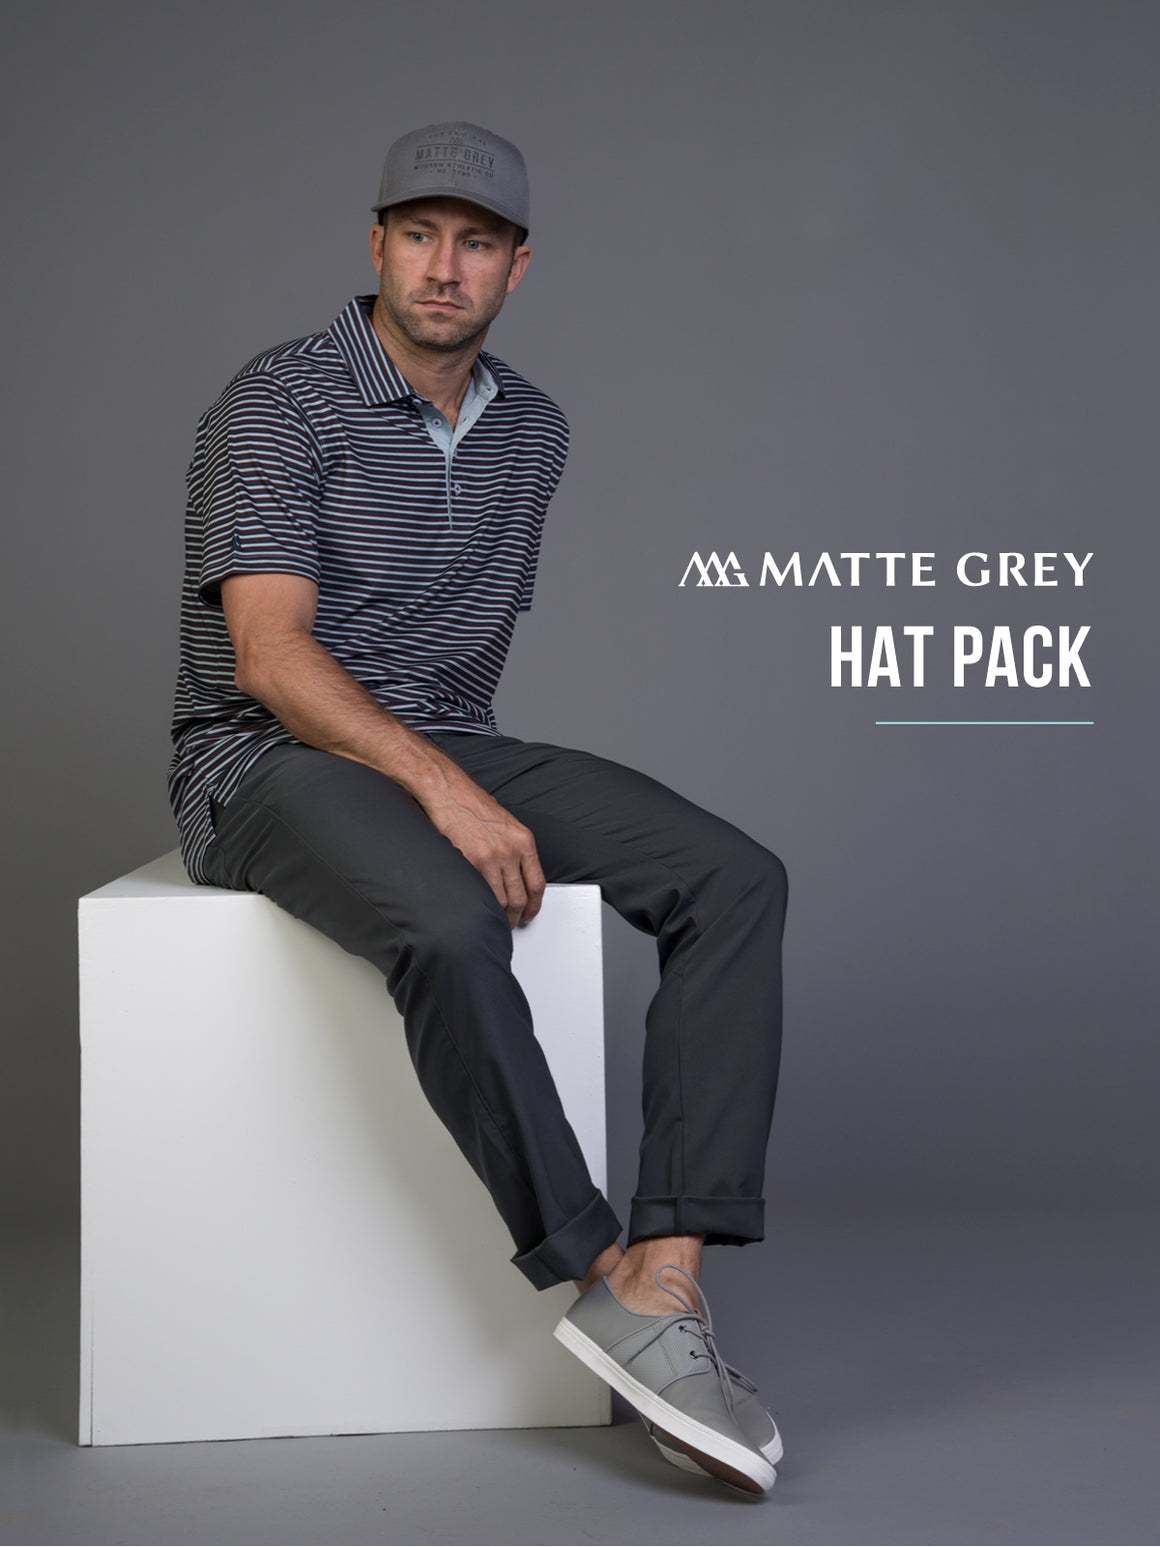 Matte Grey Hat Sample Pack Flash Sale